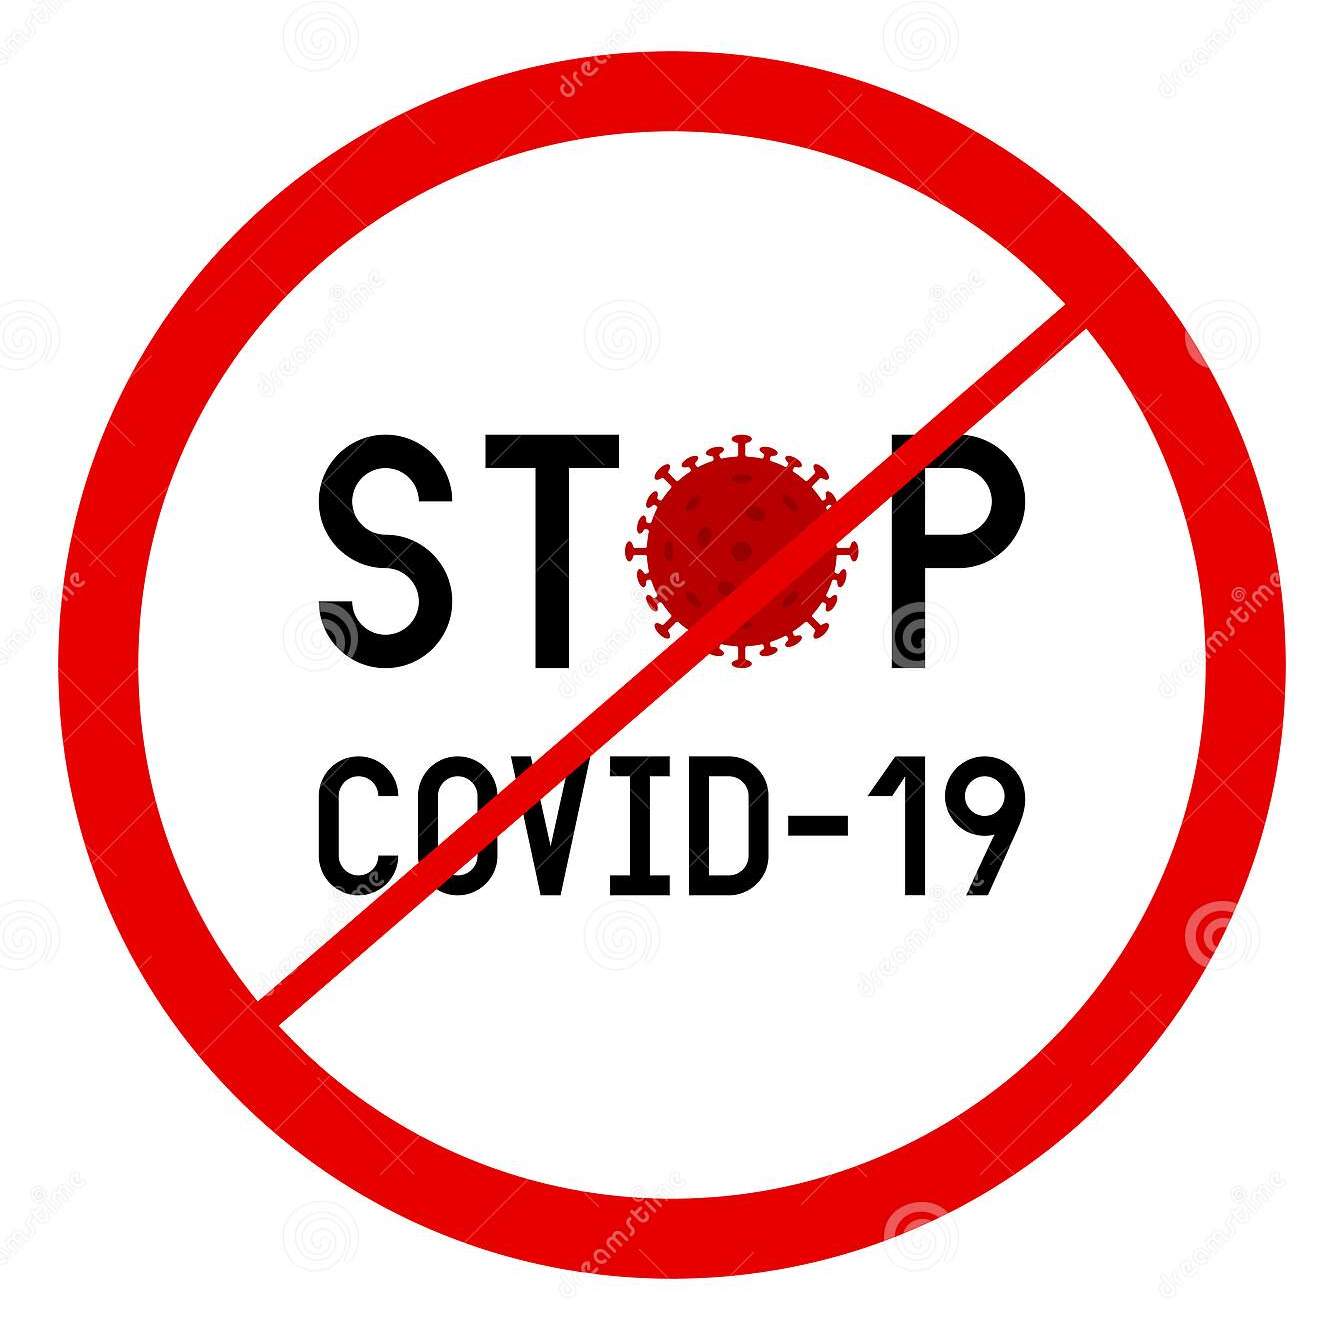 В условиях риска заражения COVID-19 необходимо применение средств индивидуальной защиты